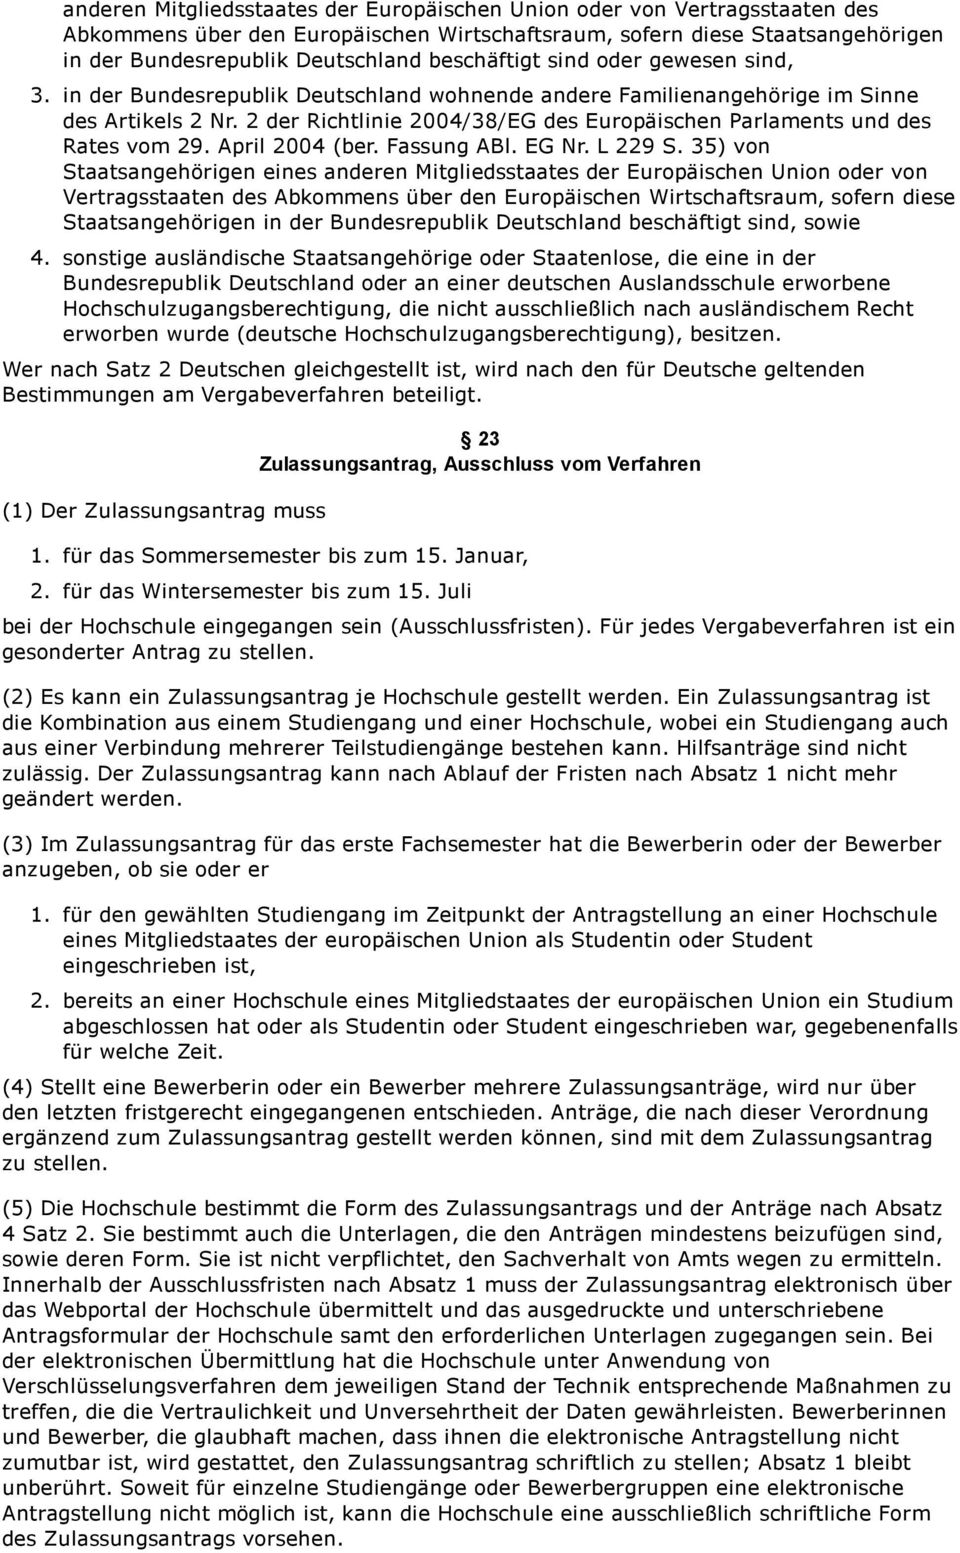 2 der Richtlinie 2004/38/EG des Europäischen Parlaments und des Rates vom 29. April 2004 (ber. Fassung ABl. EG Nr. L 229 S.